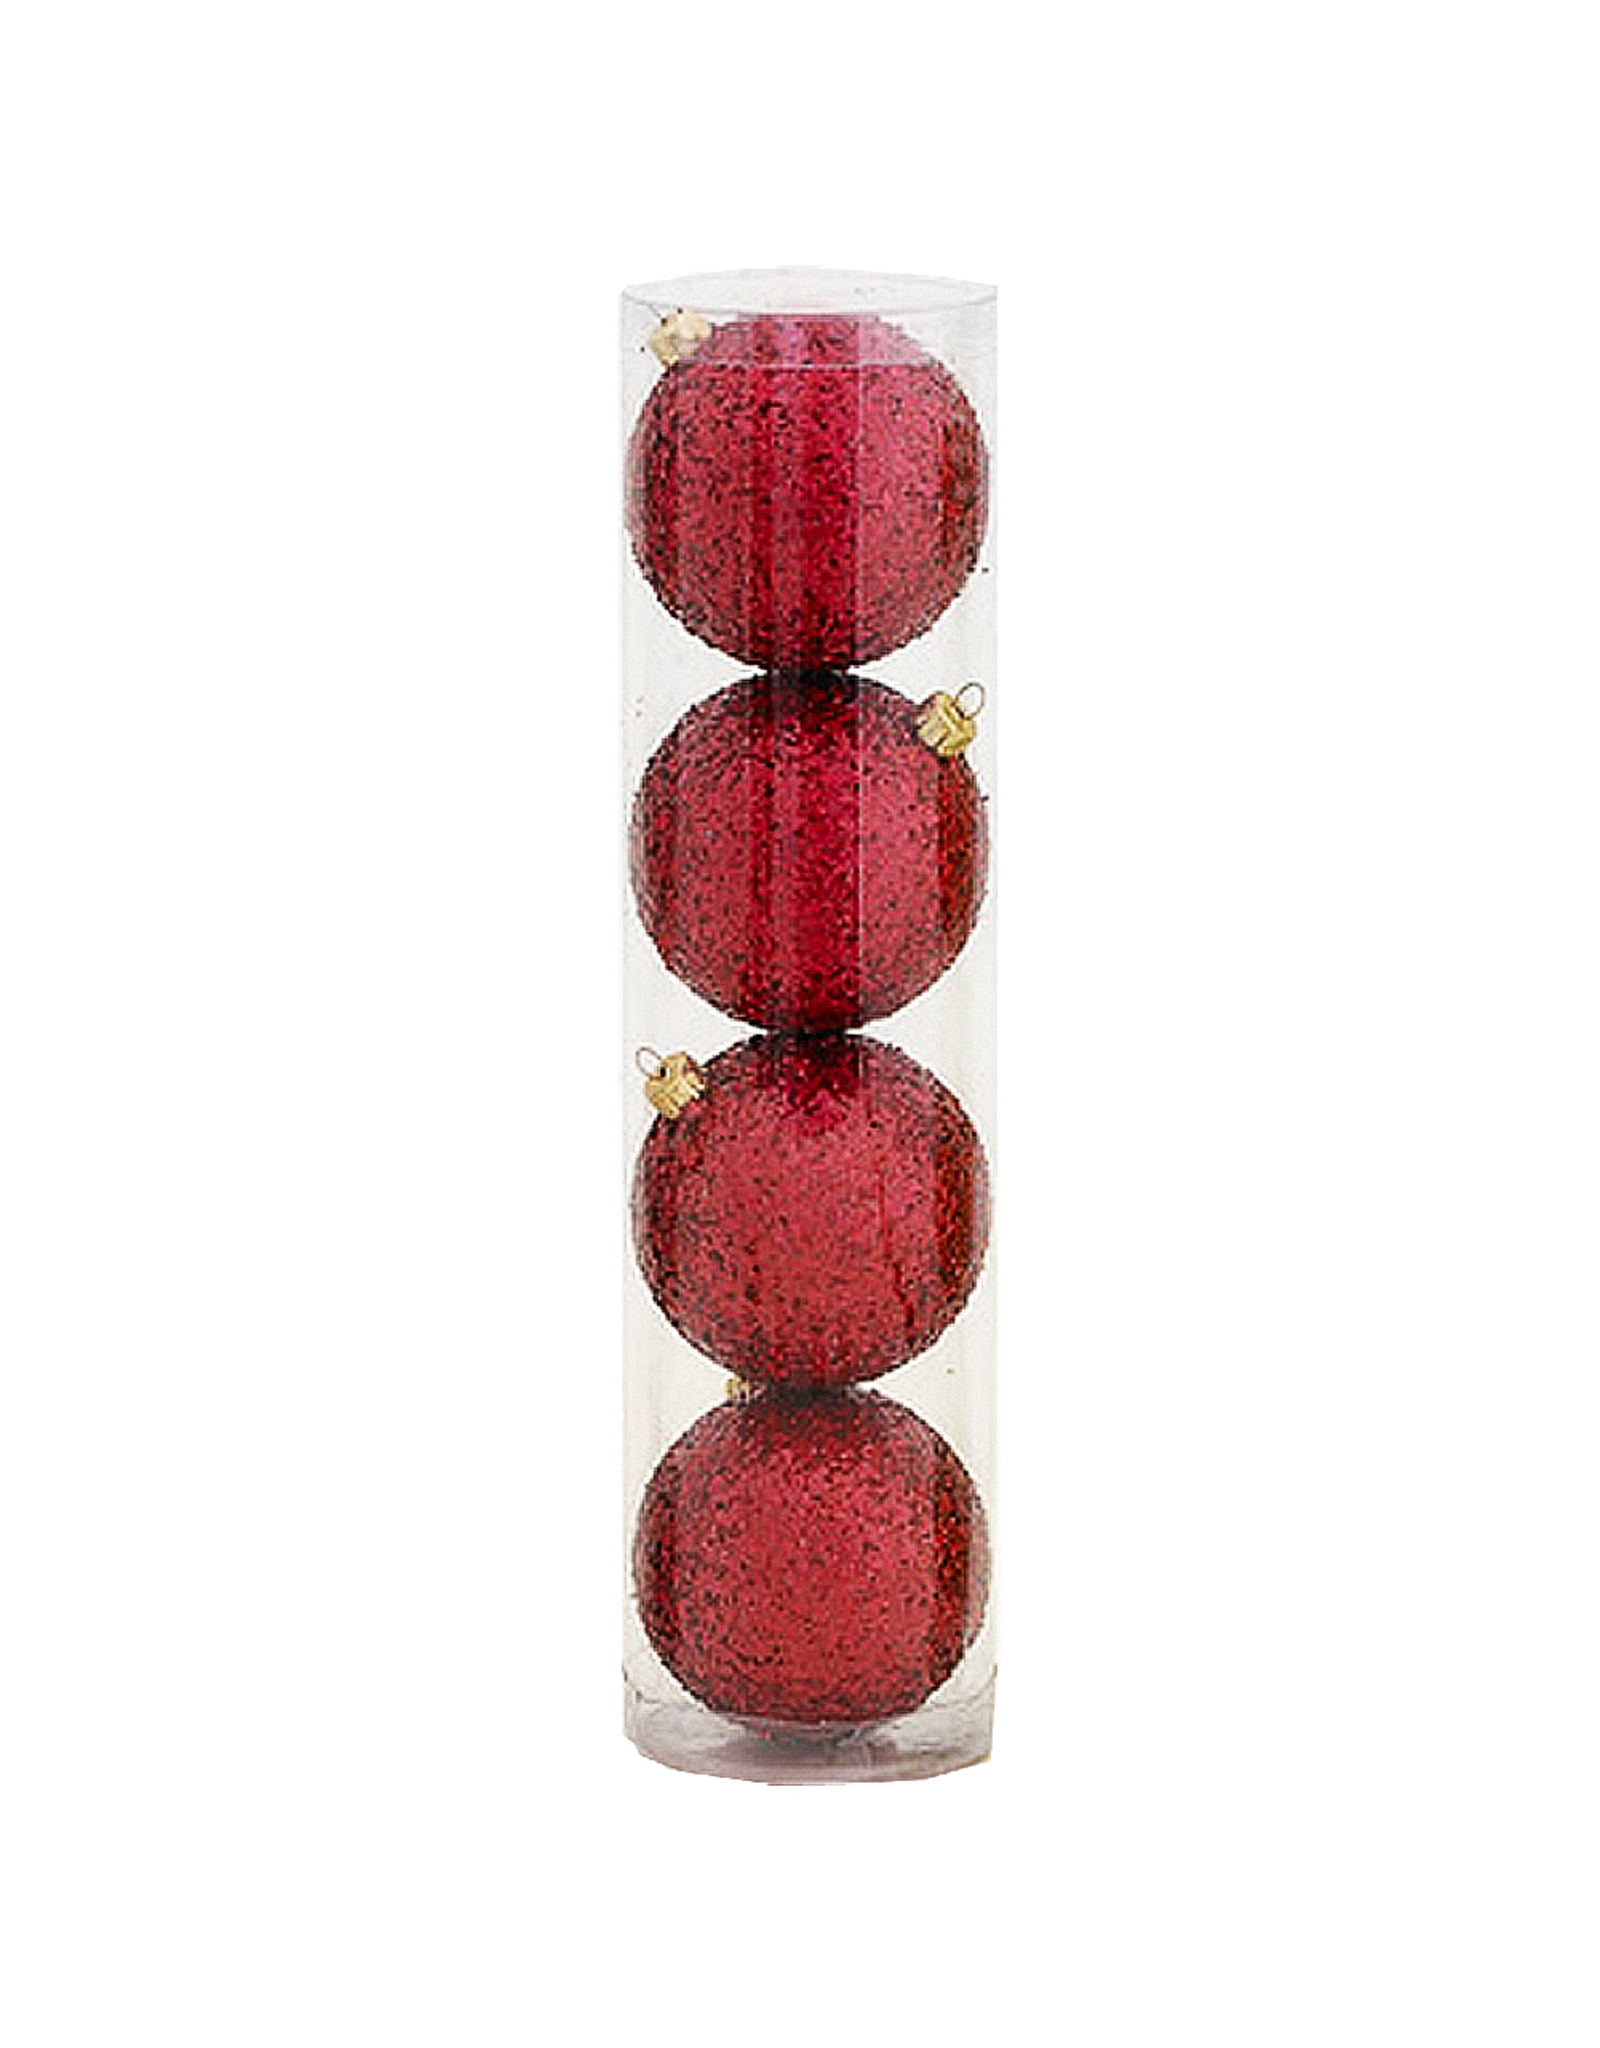 Kurt Adler Shatterproof Ball Ornaments Red Glittered 80MM Set of 4 PL0637